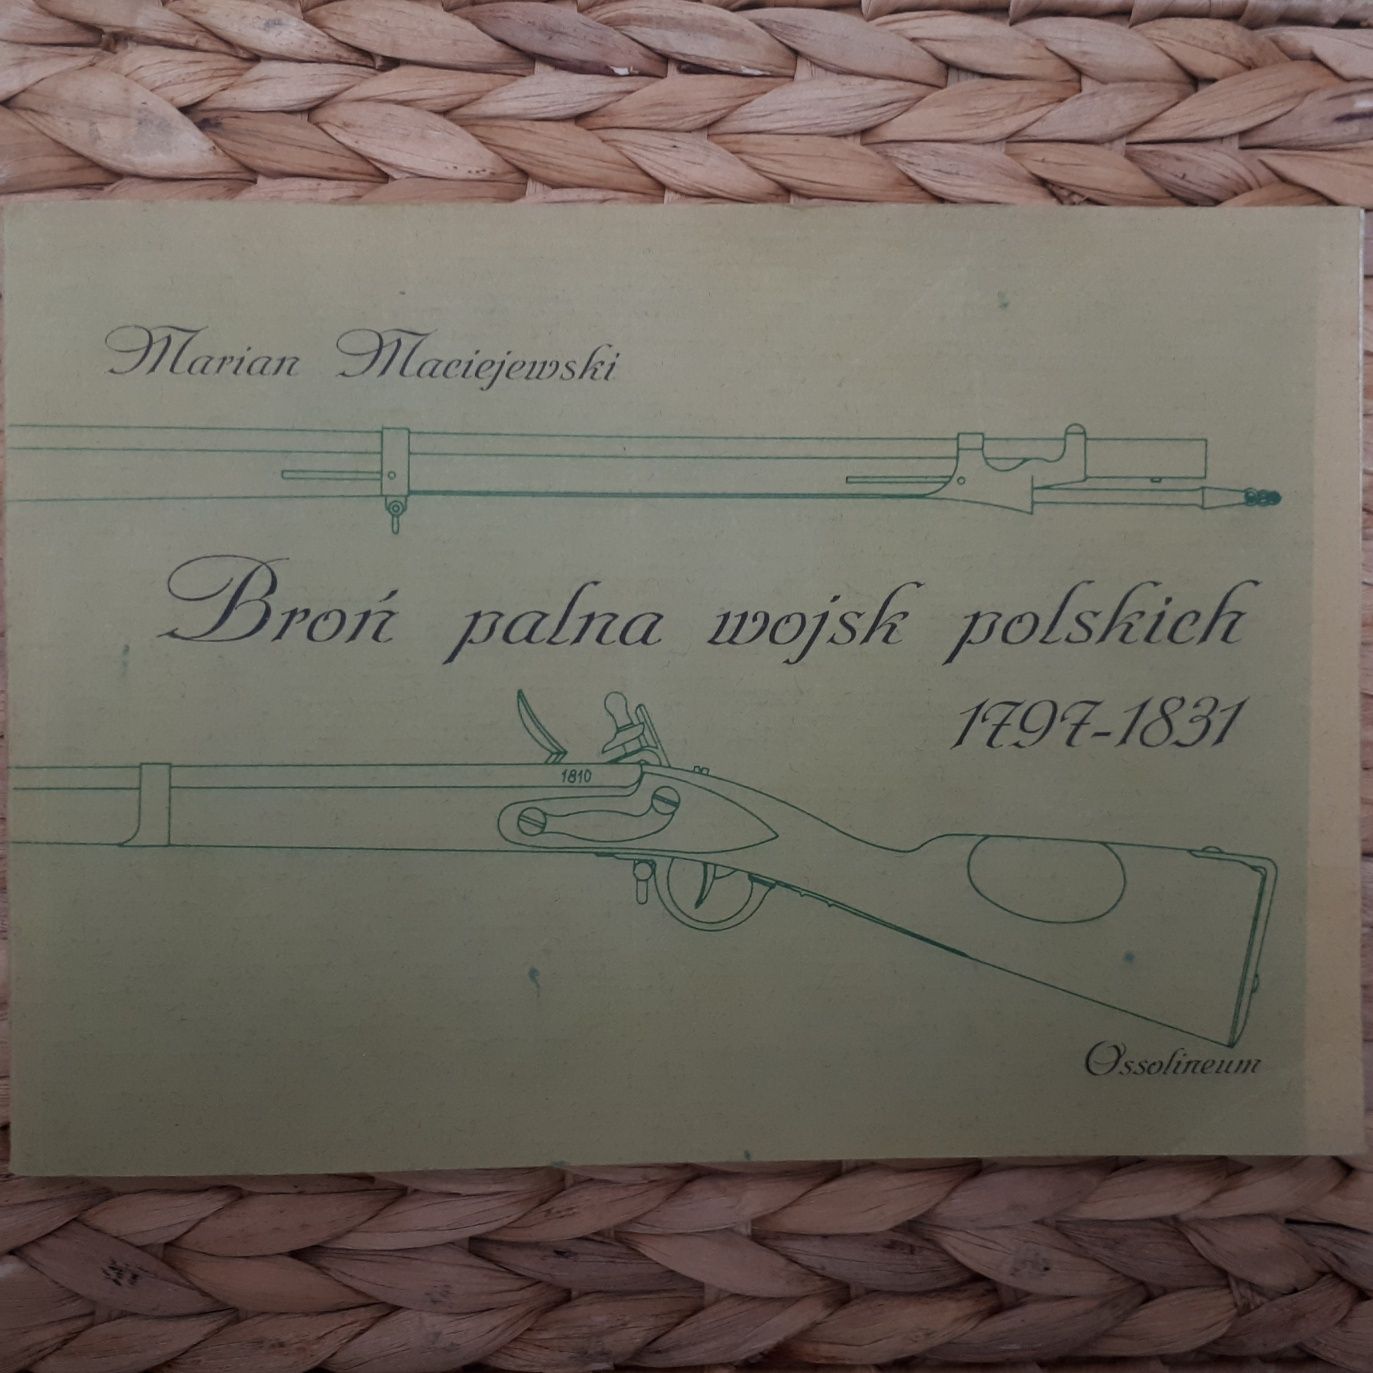 Broń palna wojsk polskich 1797- r. Marian Maciejowski